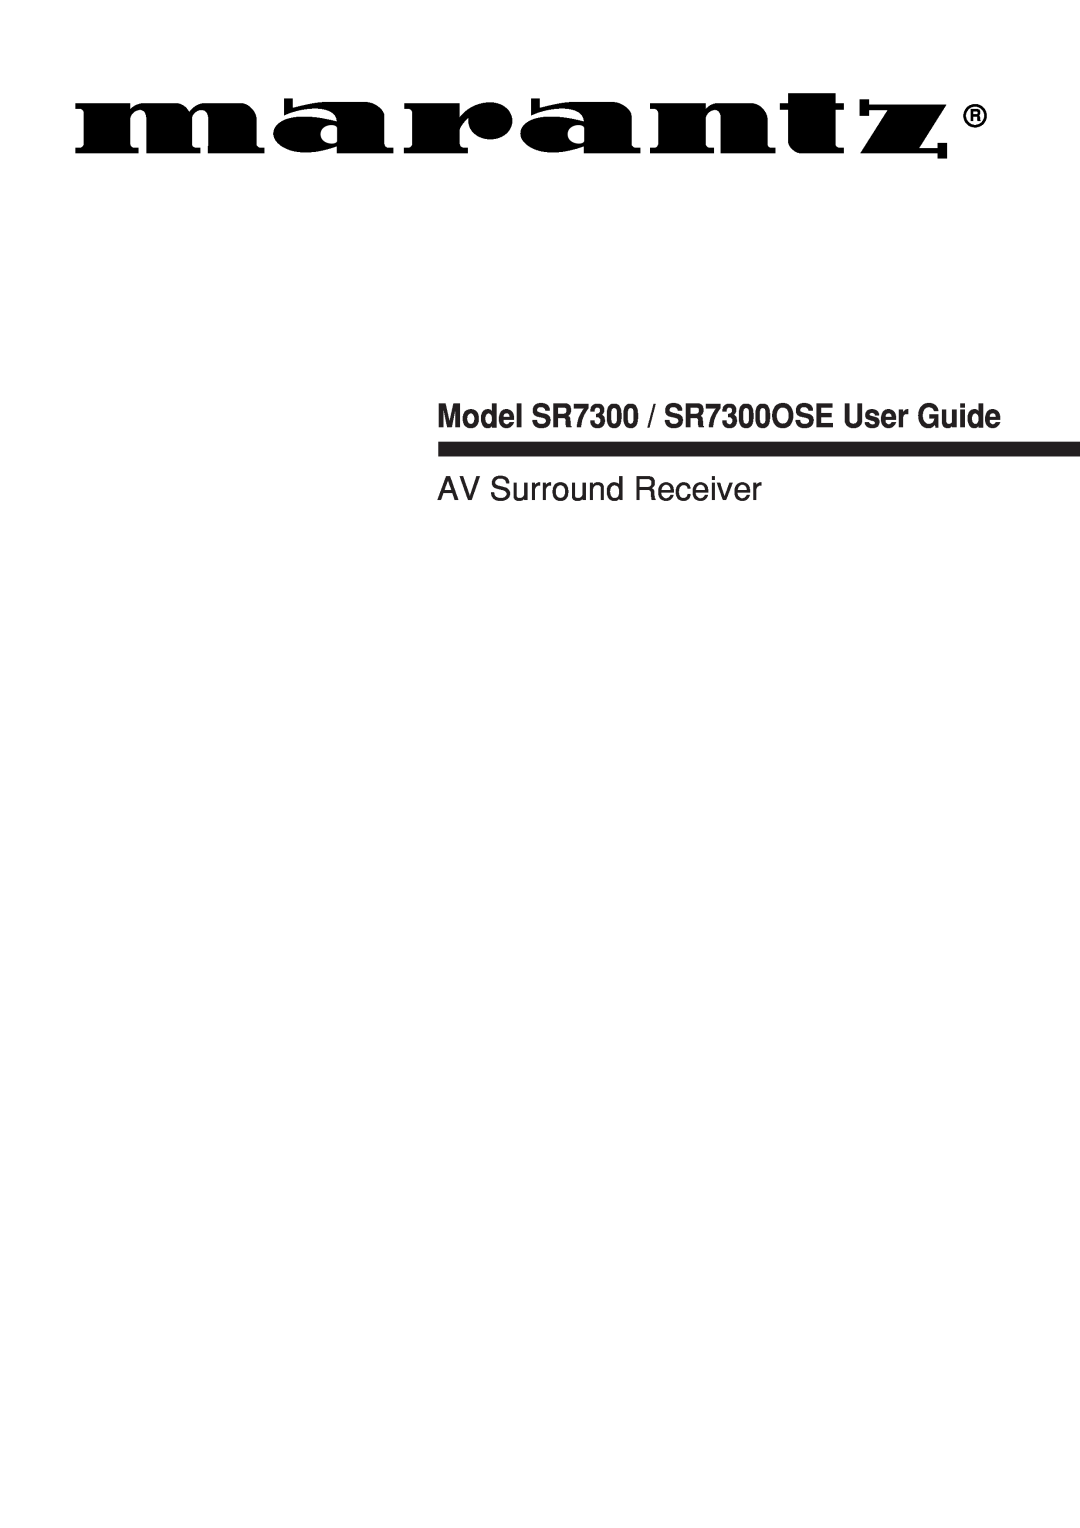 Marantz manual Model SR7300 / SR7300OSE User Guide, AV Surround Receiver 